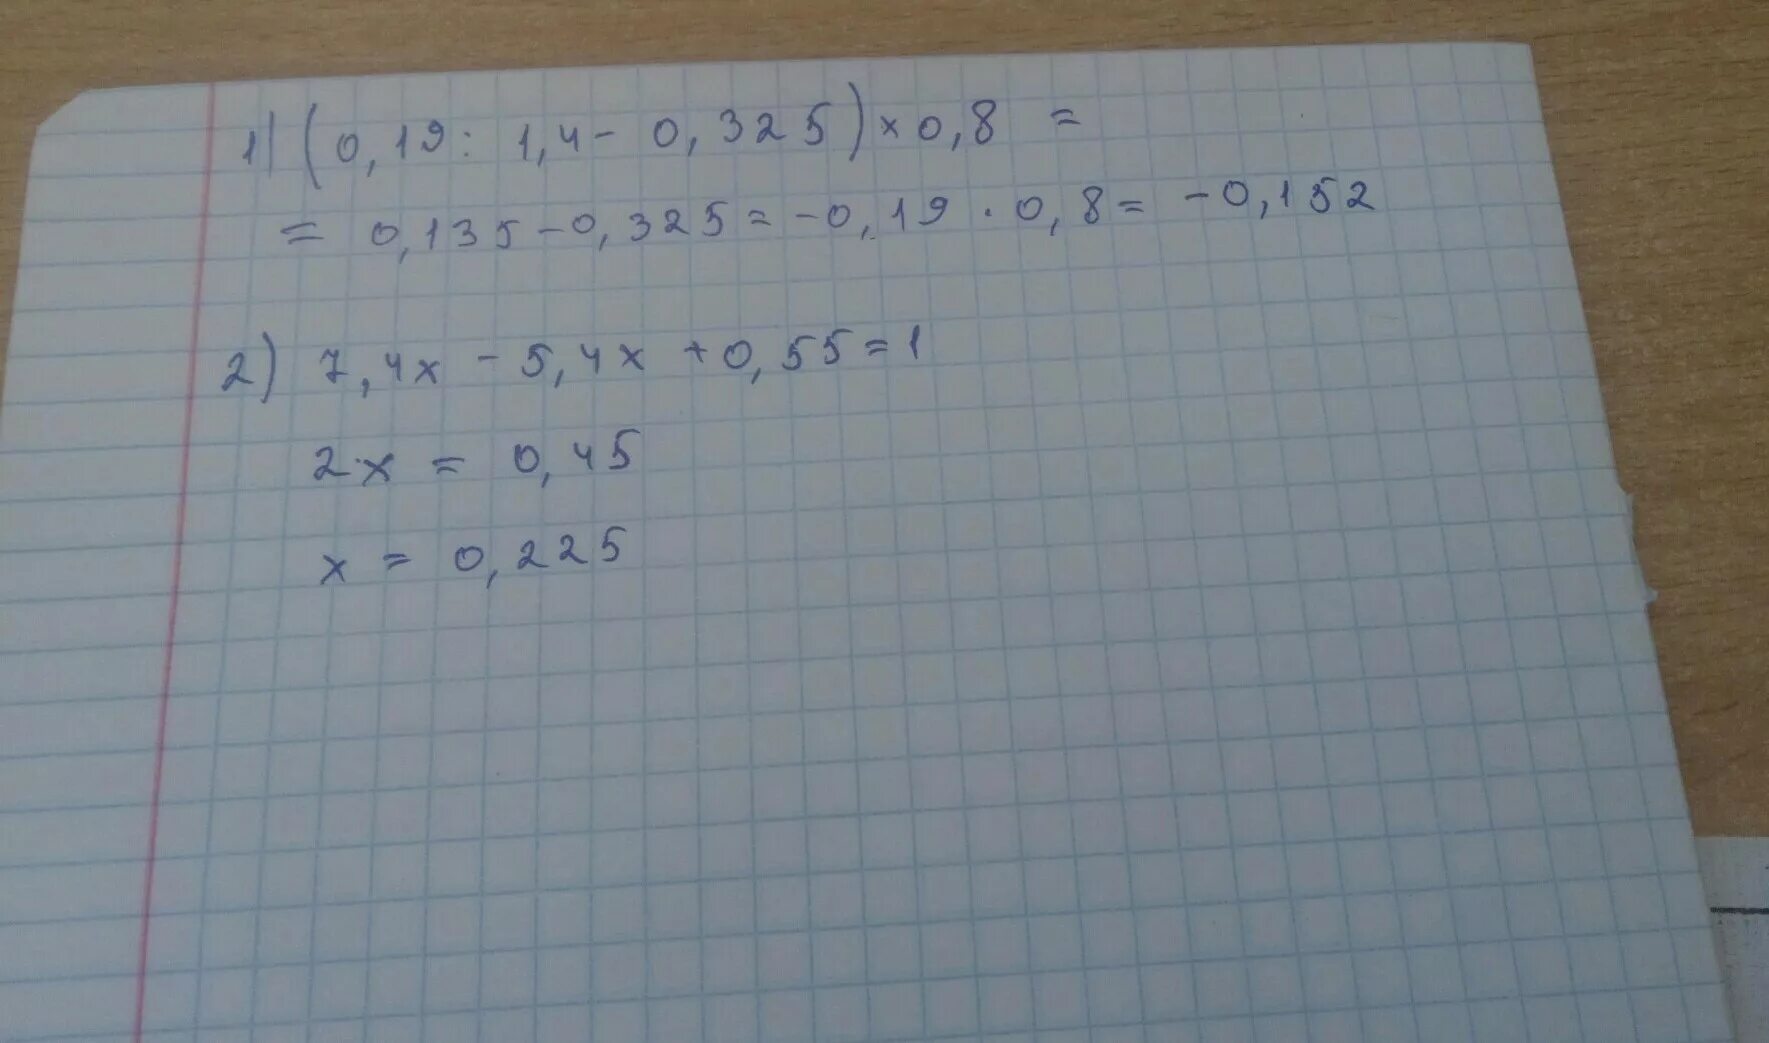 7,2х-5,4х+0,55=1. 7 2х 5 4х +0.55 1 решение. 7 2x 5 4x +0.55 равно 1 решение. 1,1х+0,7х+0,55=1.